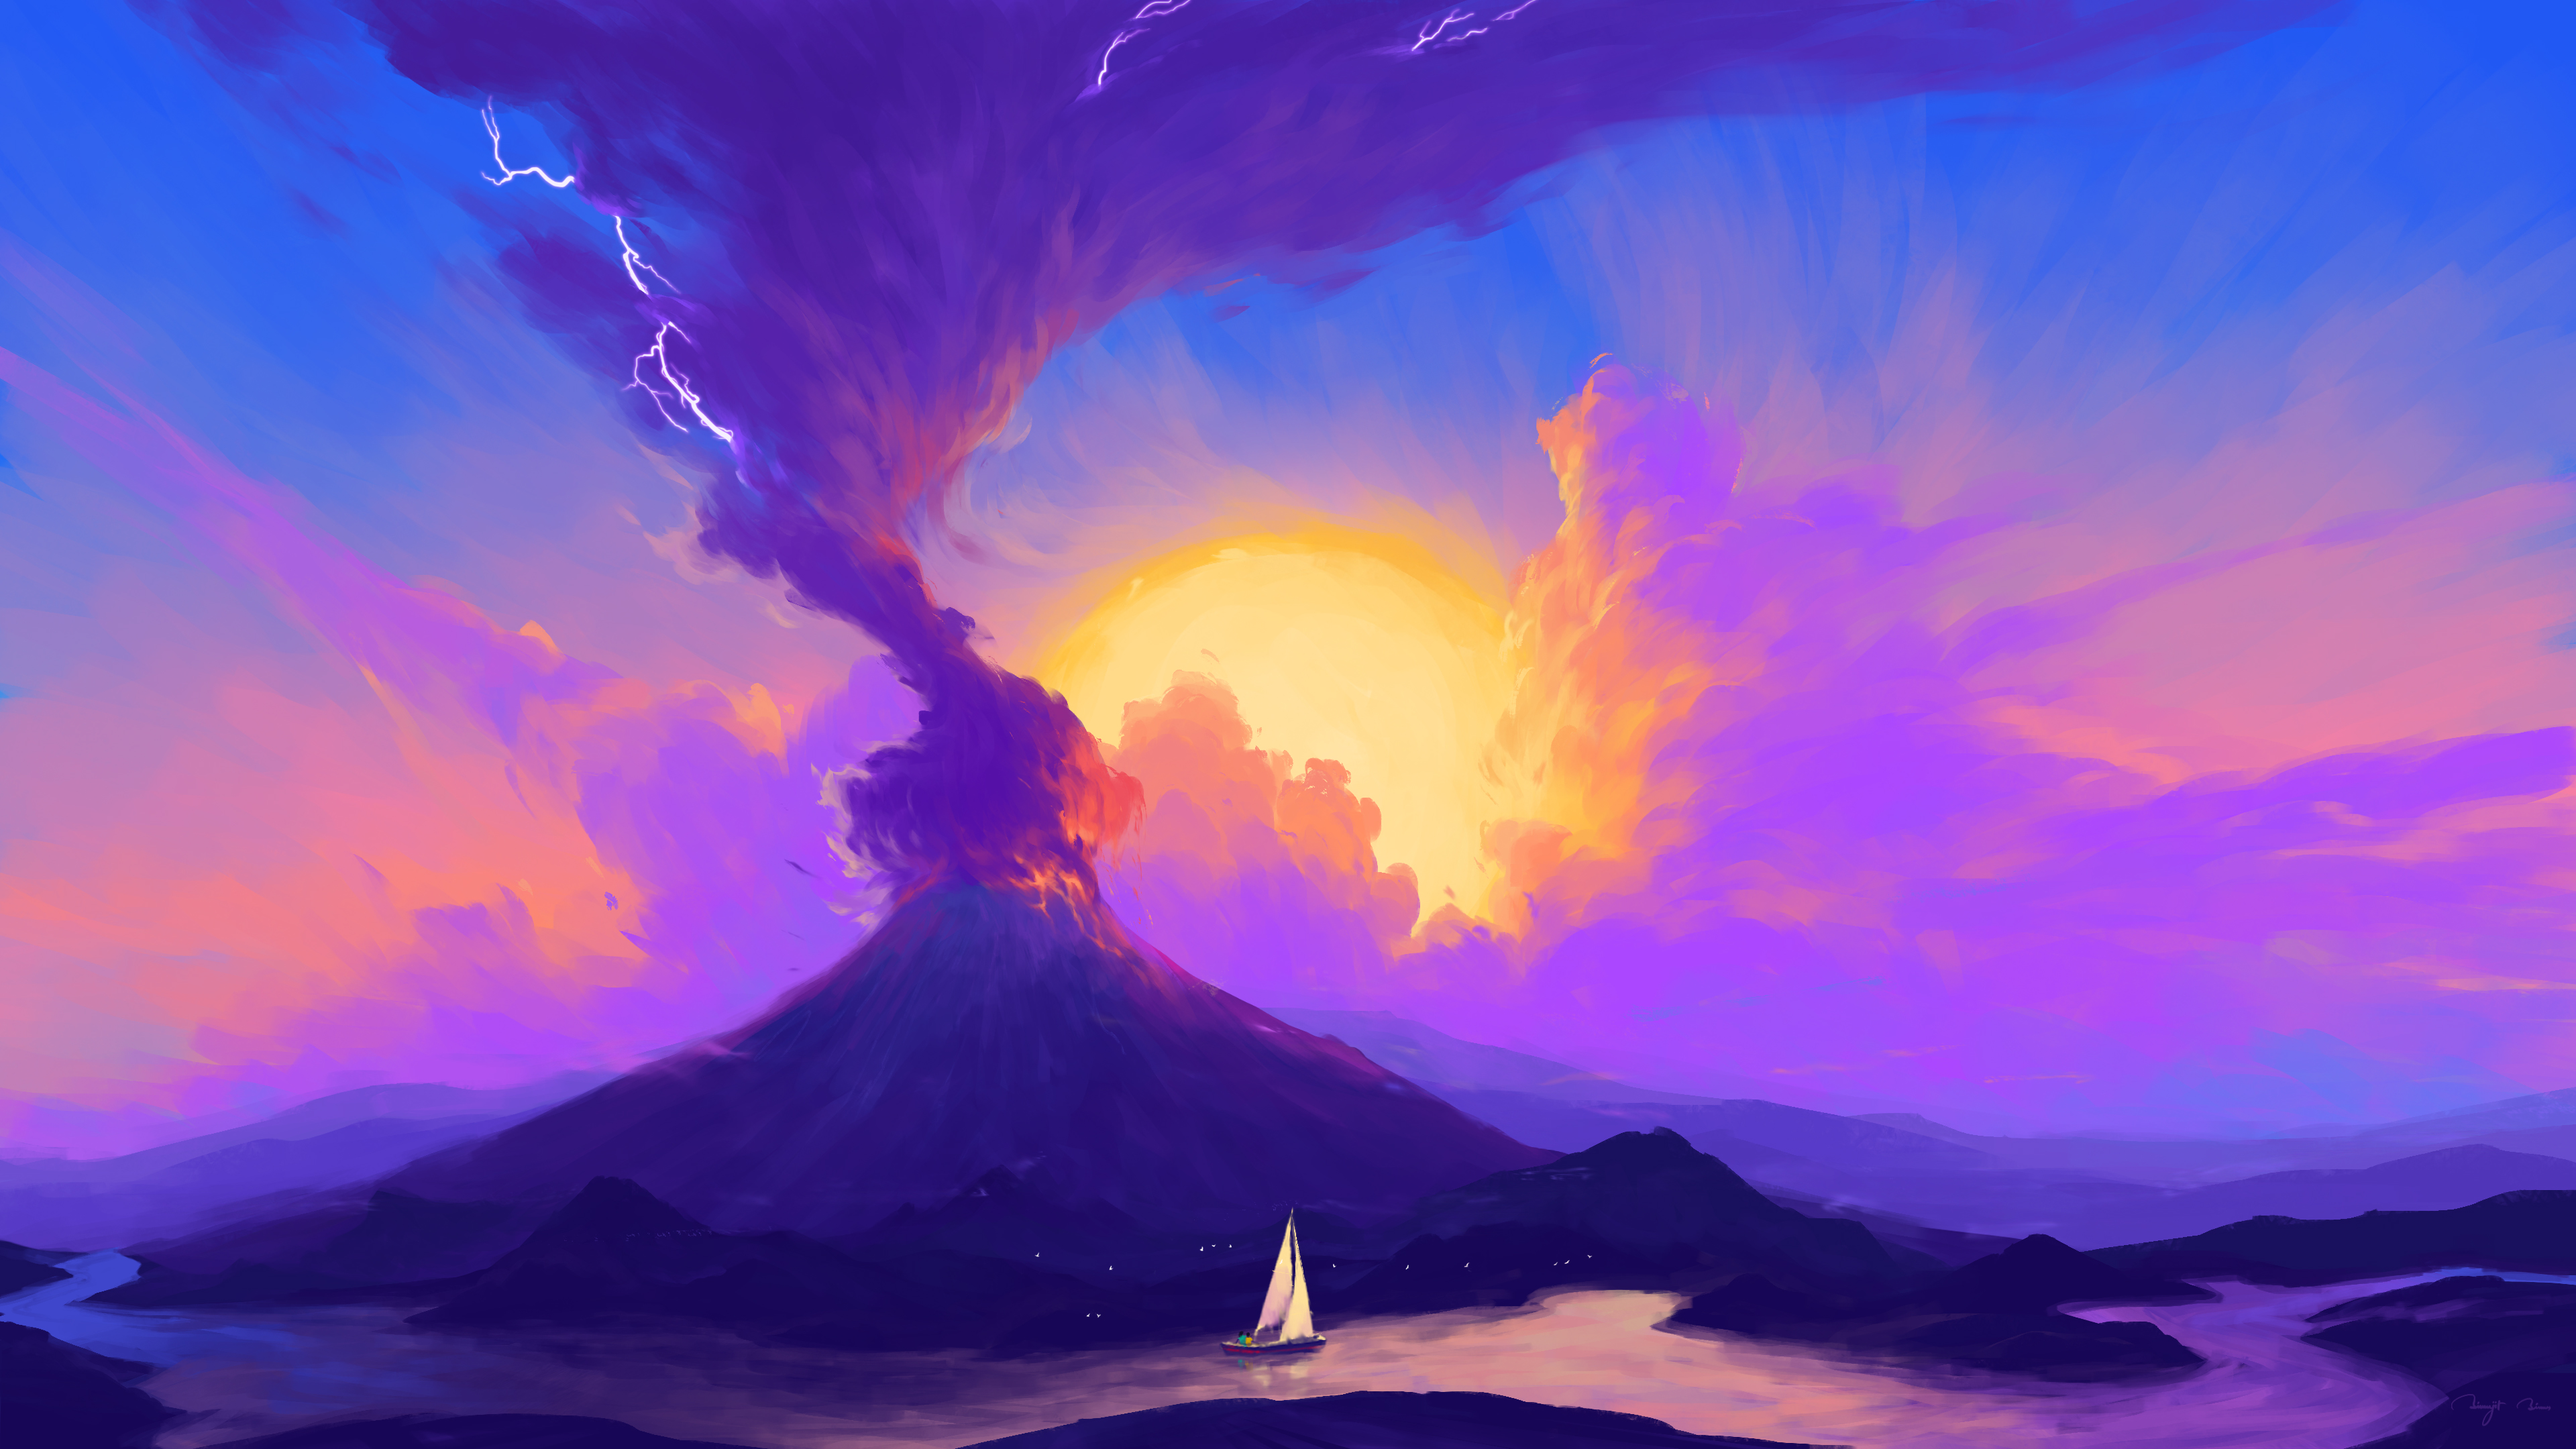 BisBiswas Digital Art Artwork Illustration Volcanic Eruption Volcano Landscape Clouds Ship Boat Natu 3840x2160